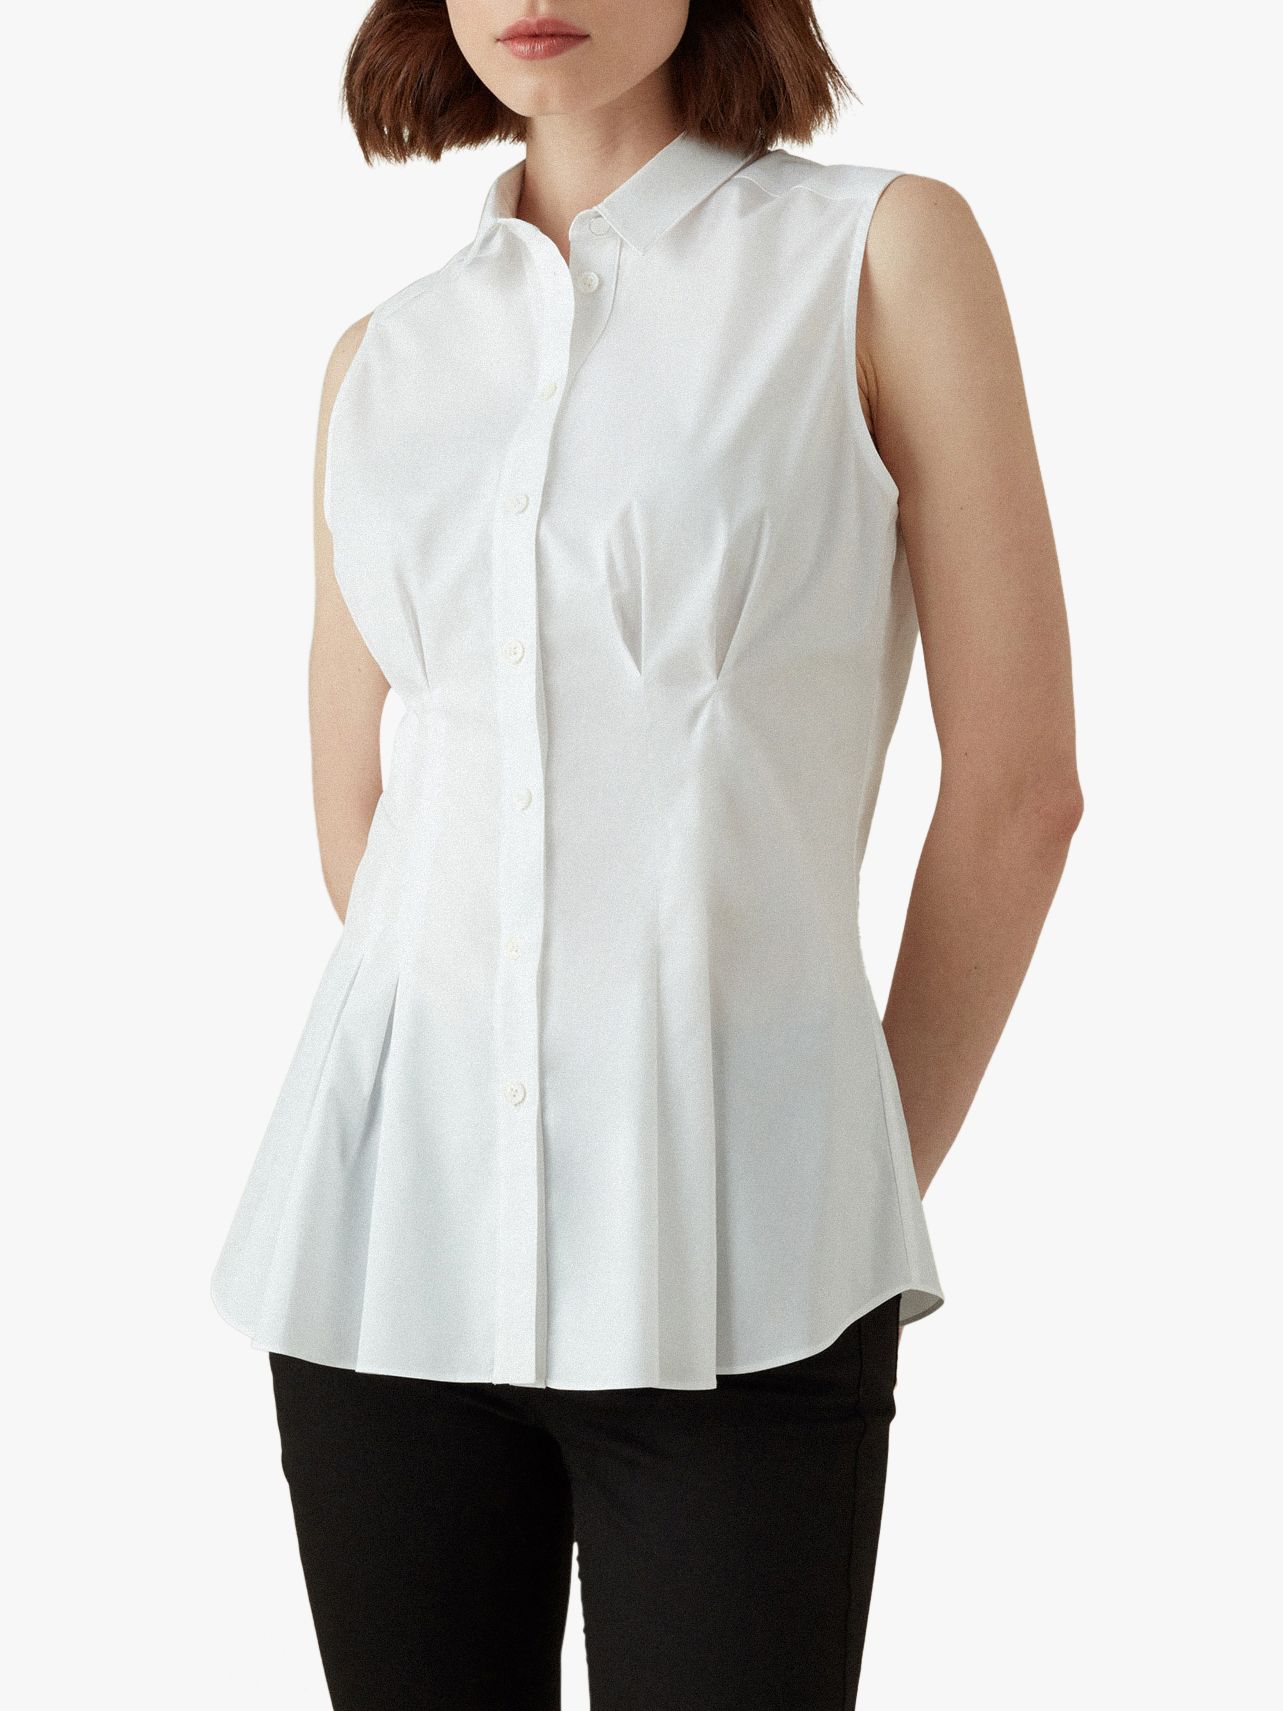 Karen Millen Cinched Waist Shirt, White at John Lewis & Partners